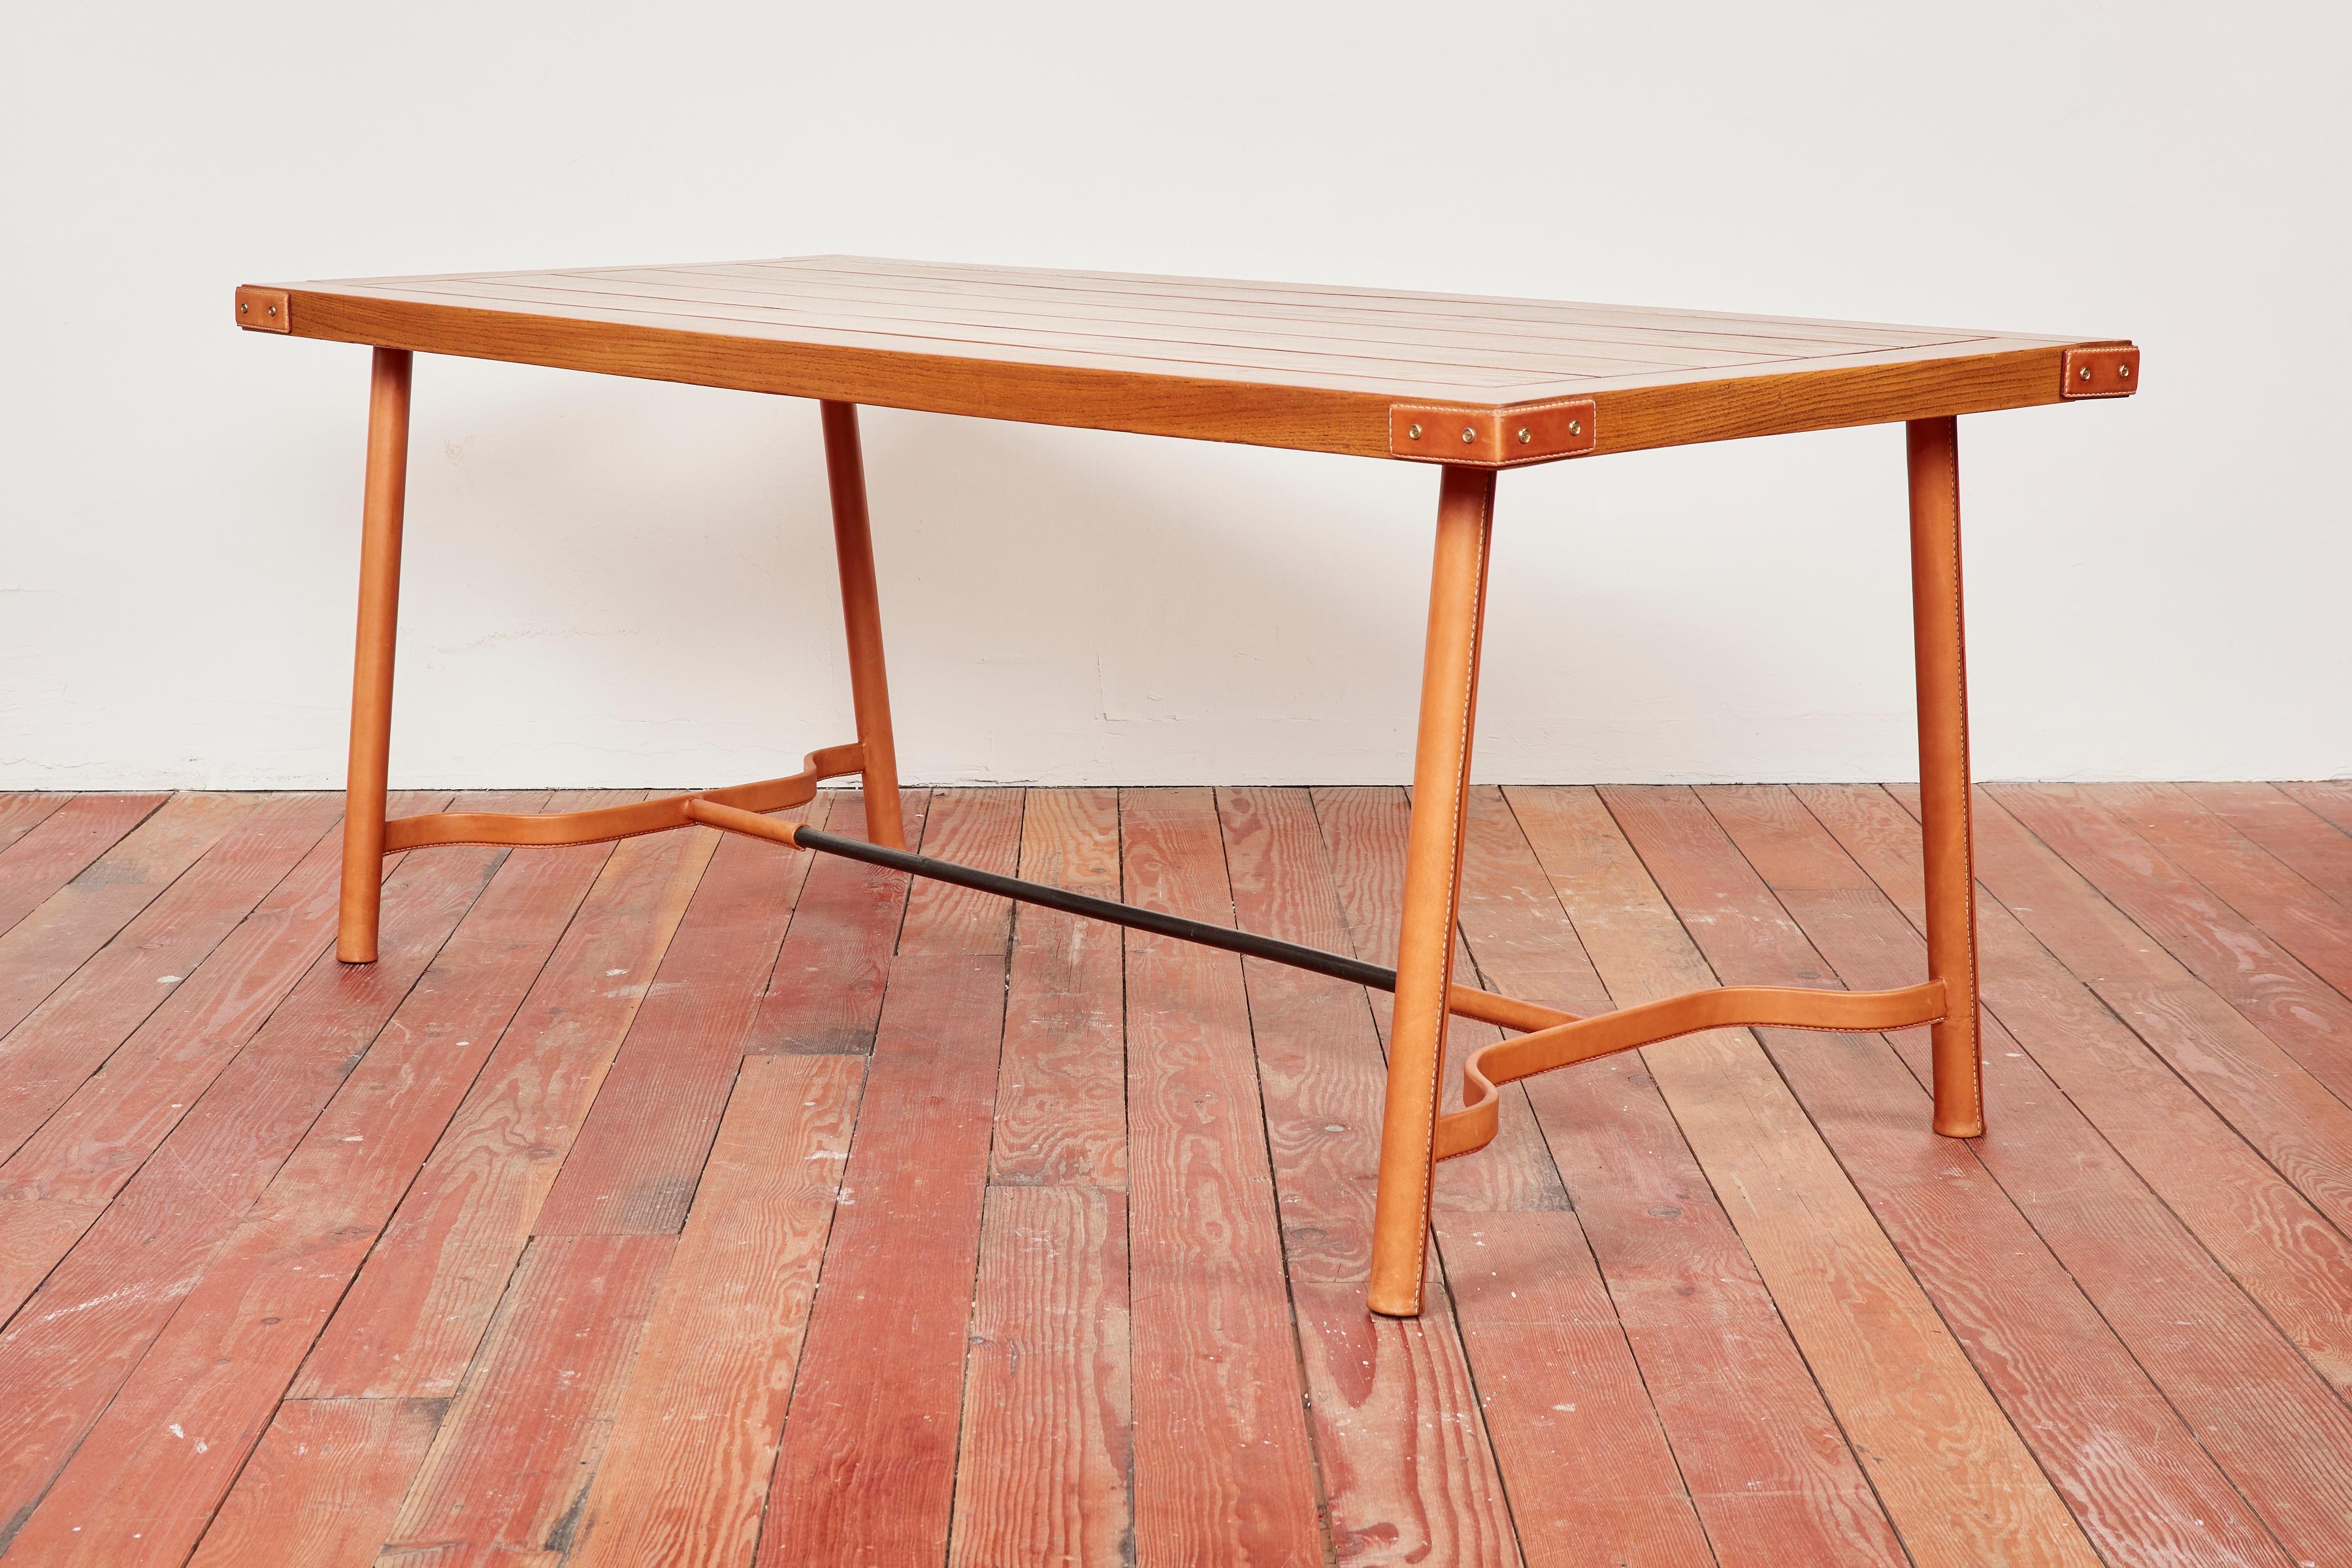 Wunderschöner Tisch von Jacques Adnet, der auch als Schreibtisch verwendet werden kann. 
Wunderschöne Lattenrostplatte aus Eichenholz und charakteristische karamellfarbene Lederbeine mit Kontrastnähten
Neues Leder, das in Frankreich nach den